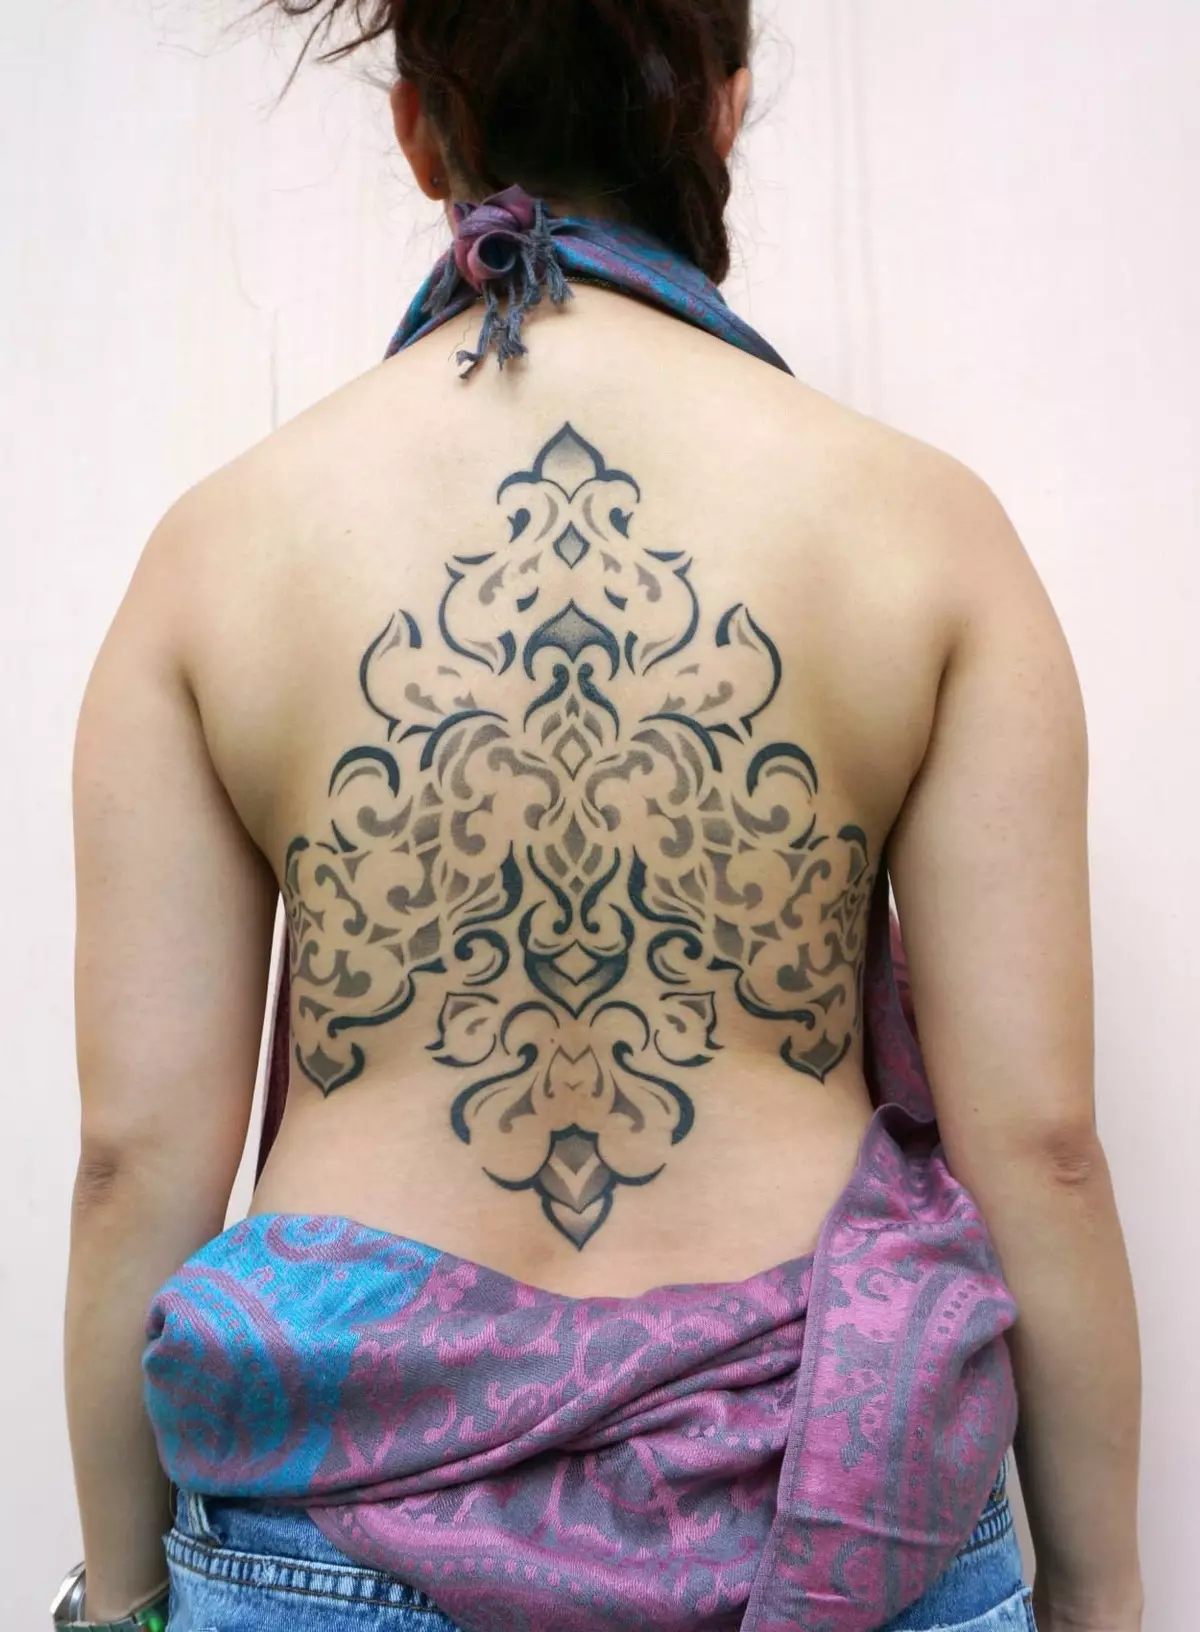 I-Baroque tattoo: Imizobo yamadoda kunye ne tattoo entle ngeepateni zamantombazana. I-TATTOO 